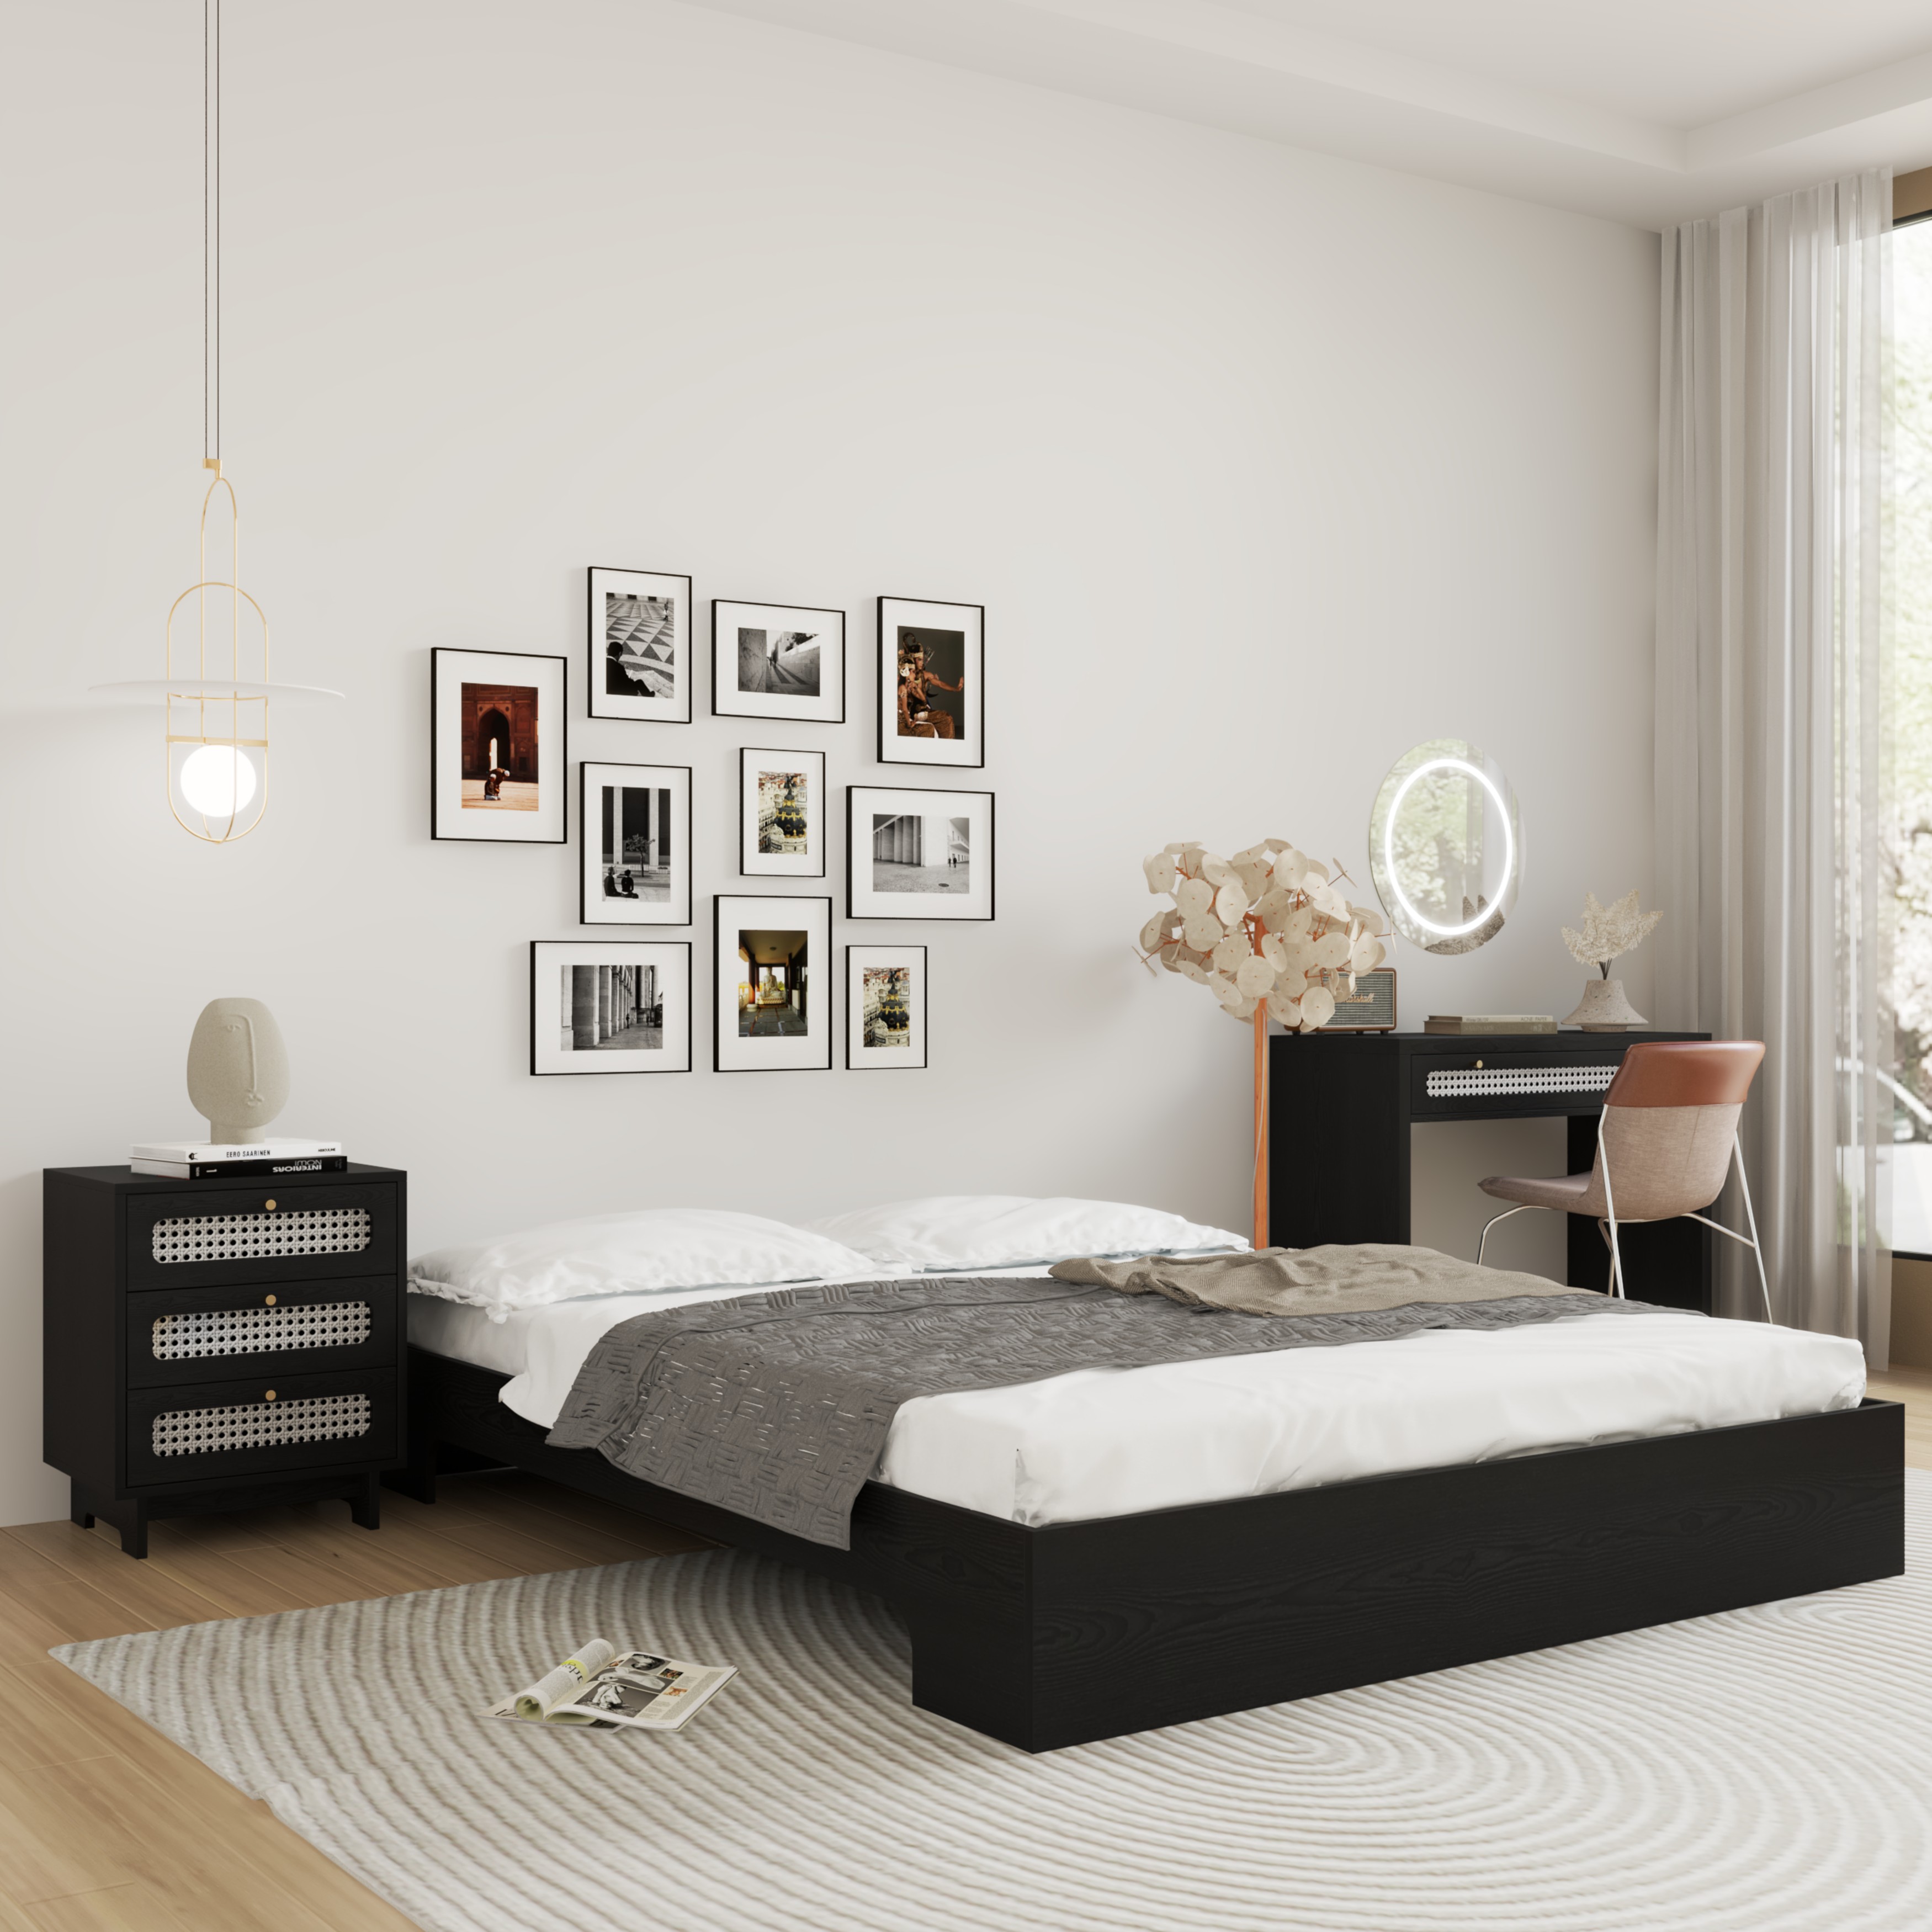 [Happy Home Furniture] MEYDAN, Giường ngủ không đâu giường, GNG_069, GNG_070, GNG_071, GNG_072